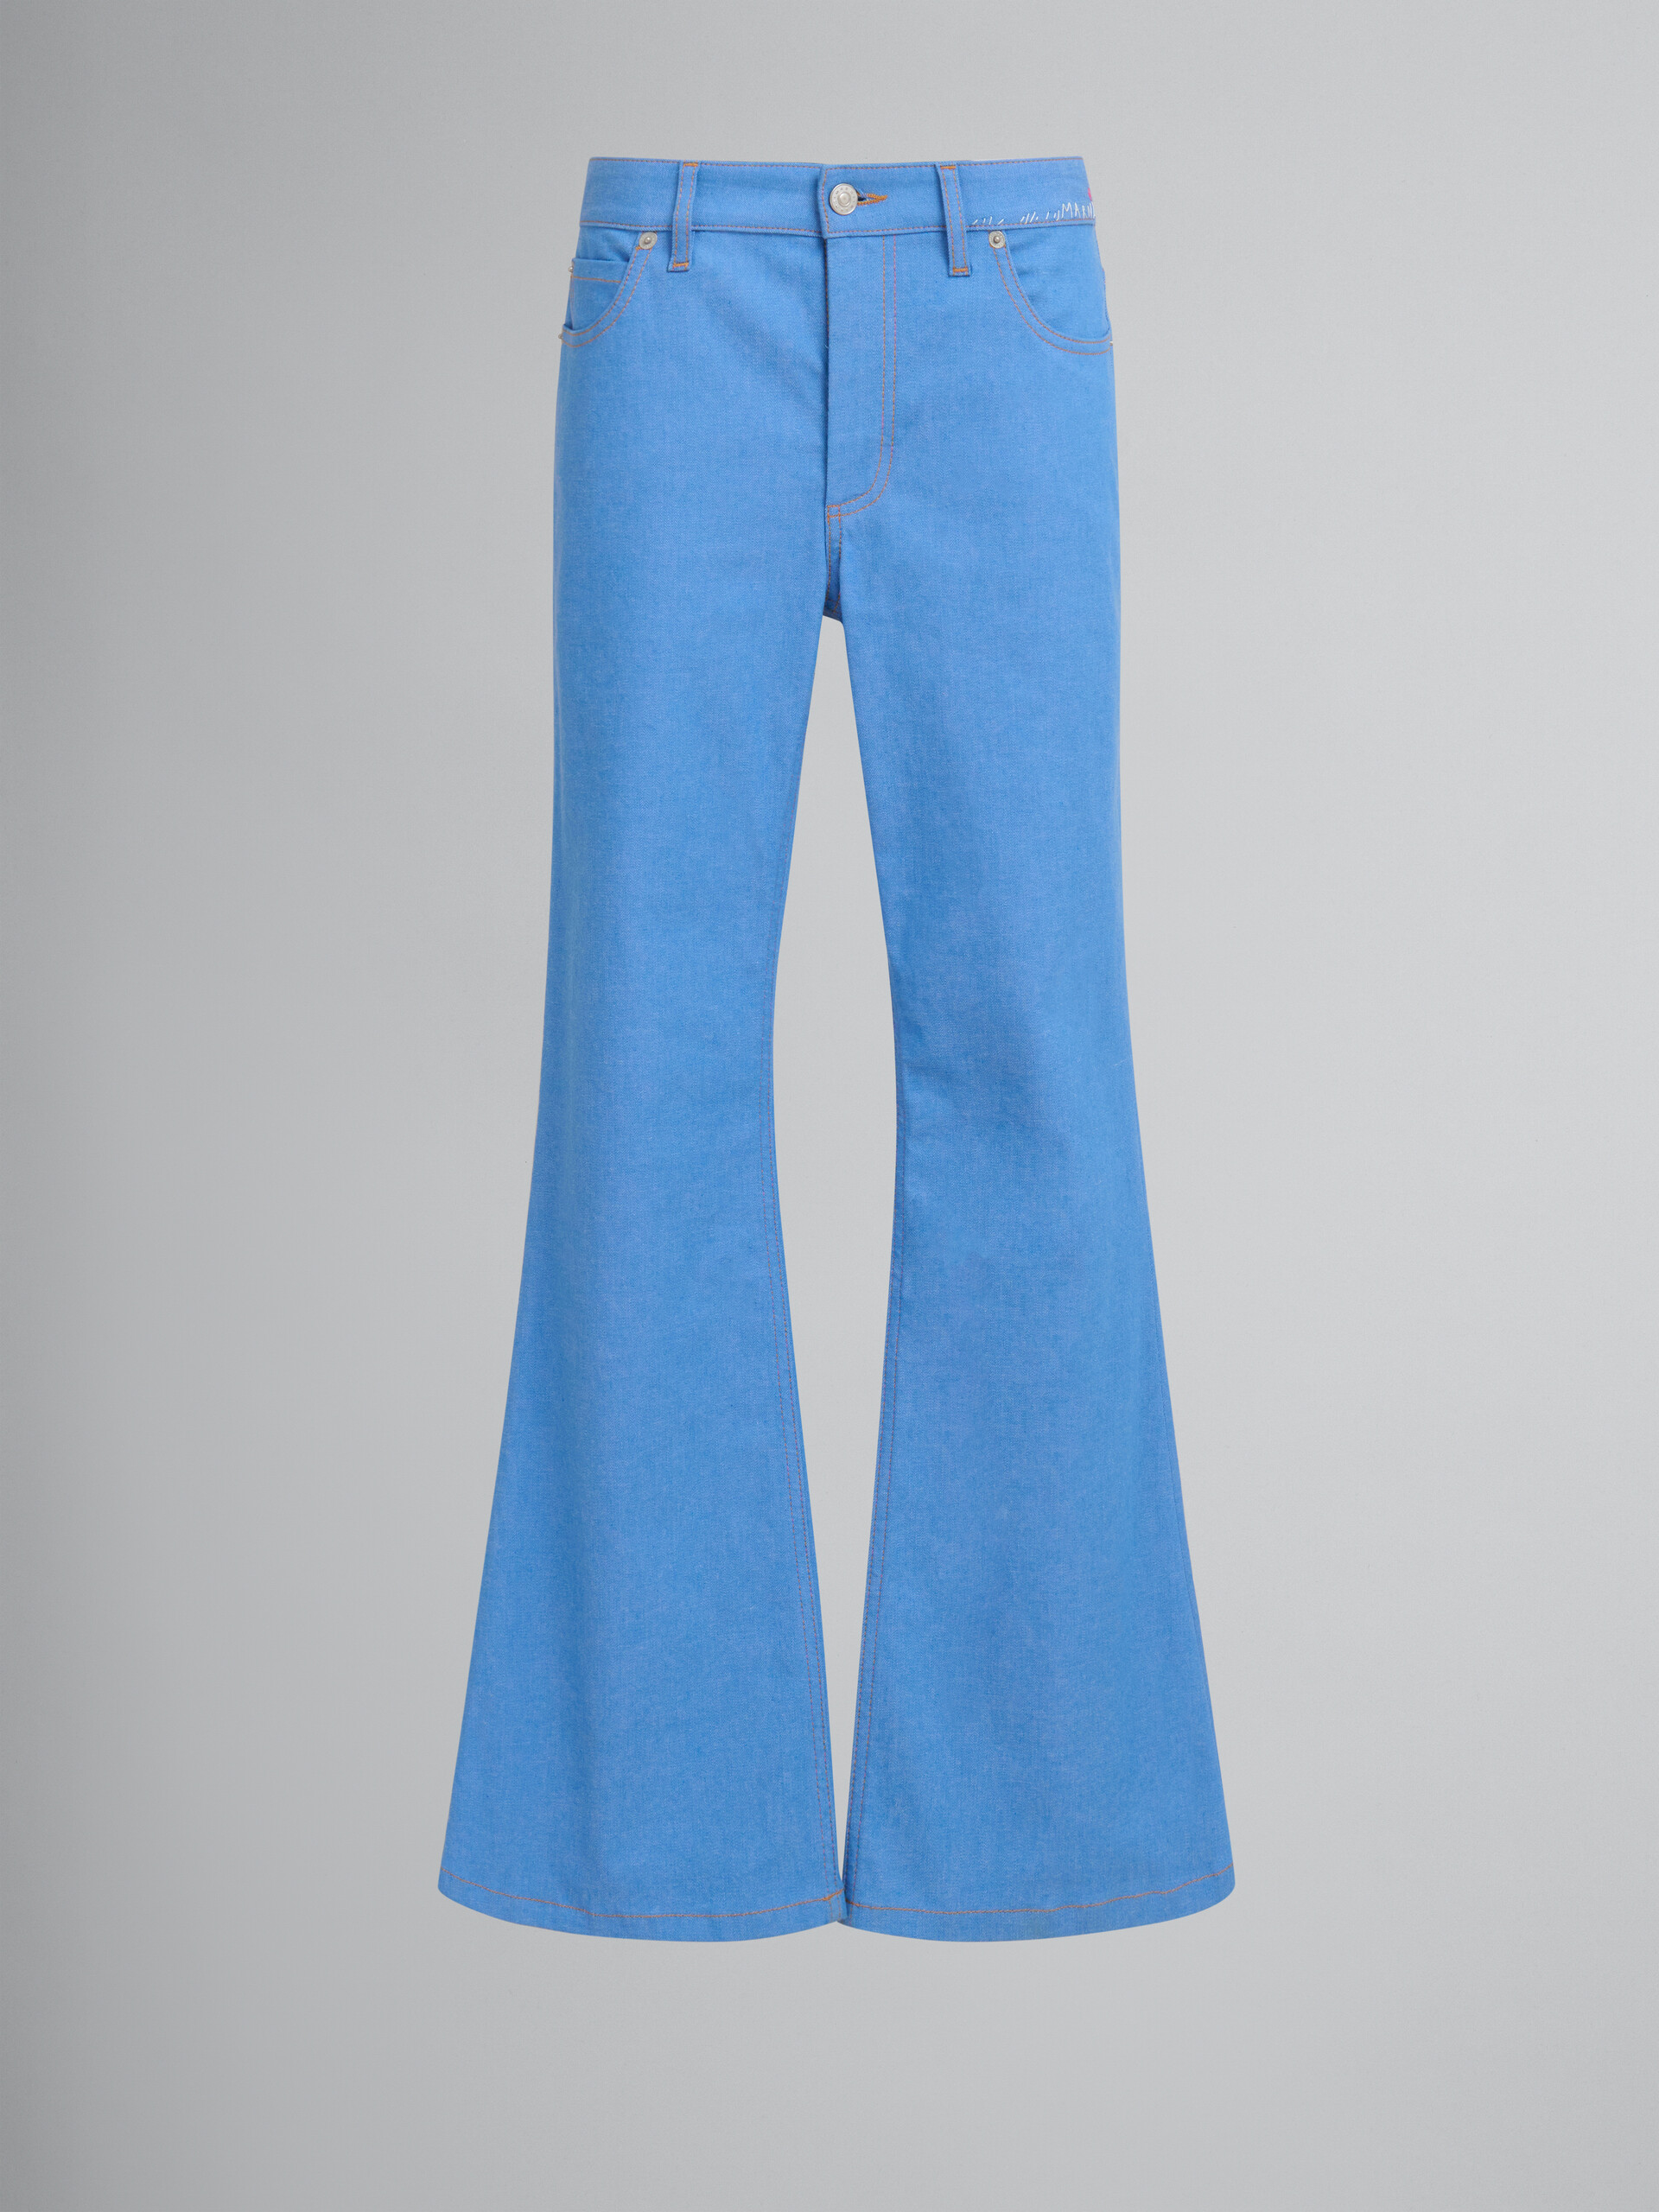 Pantalón acampanado de denim elástico azul - Pantalones - Image 1